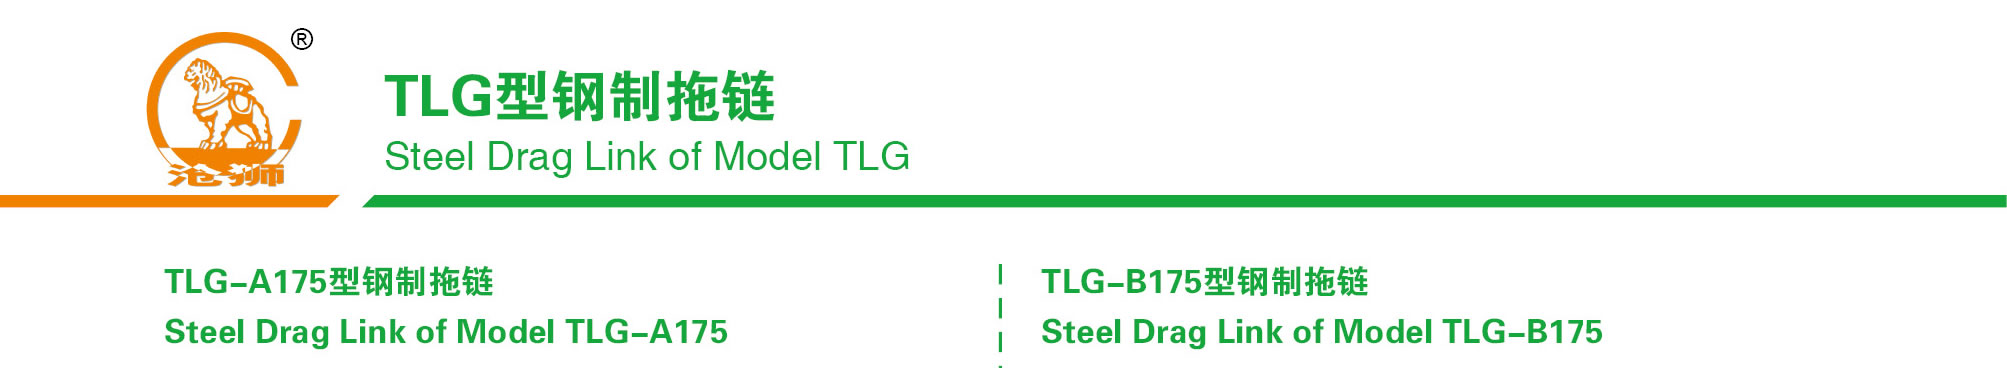 TLG型钢制拖链175型产品示意图1